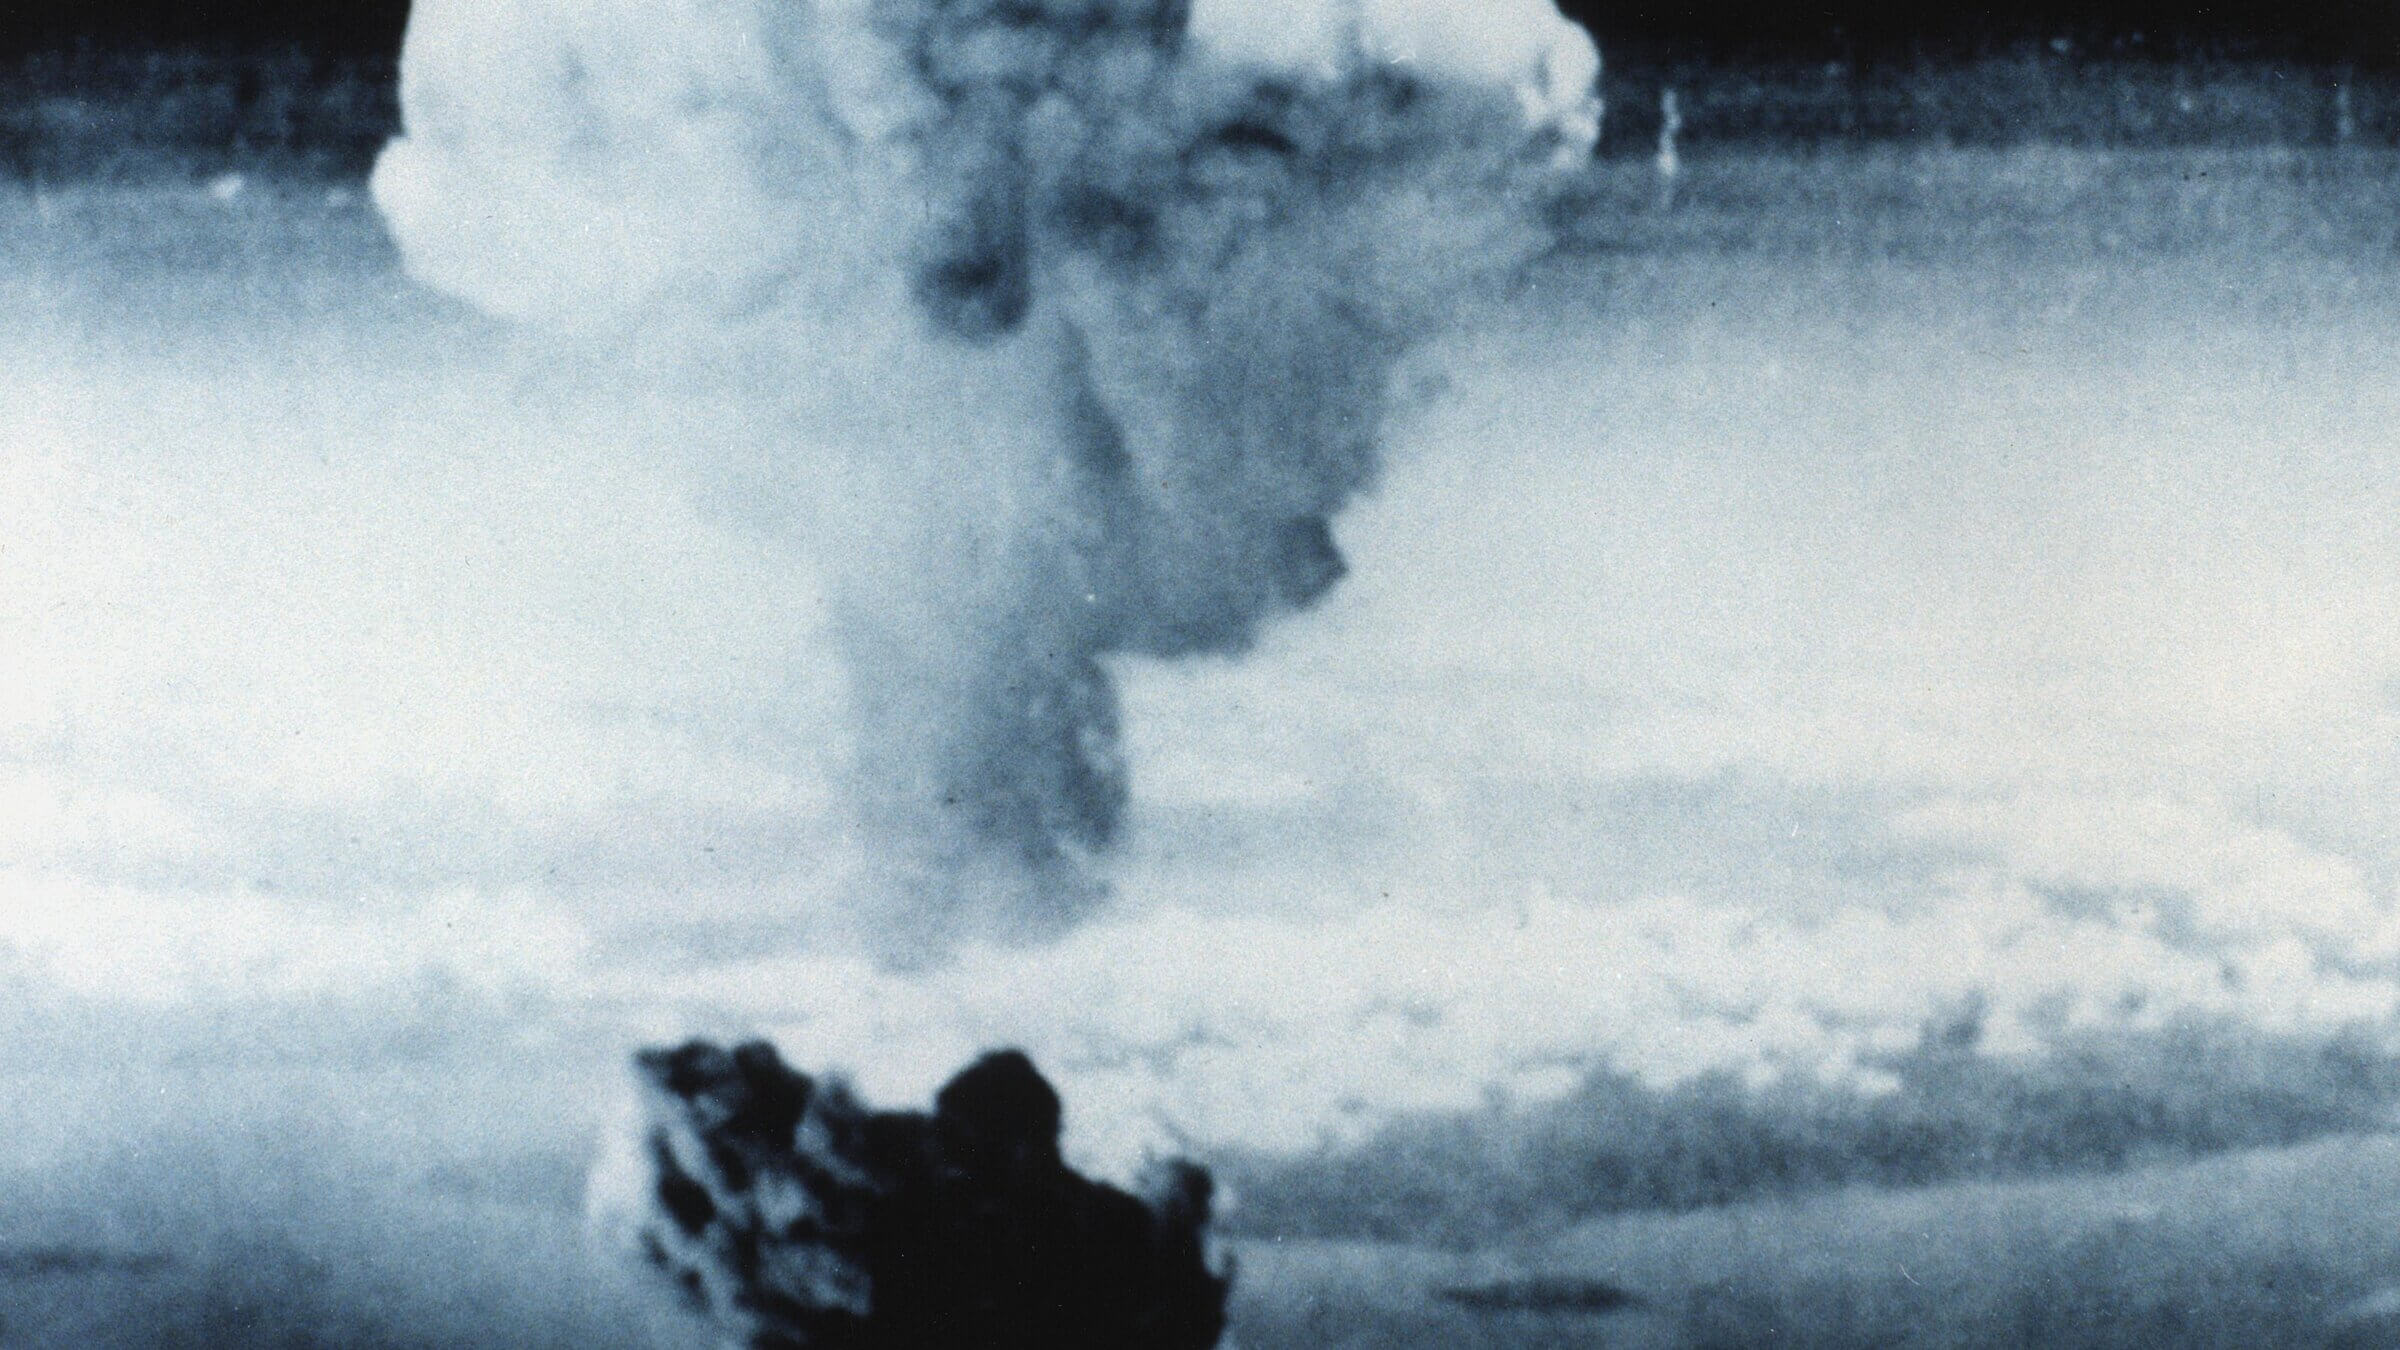 Atomic bombing of Japan at Nagasaki, Aug. 9, 1945.